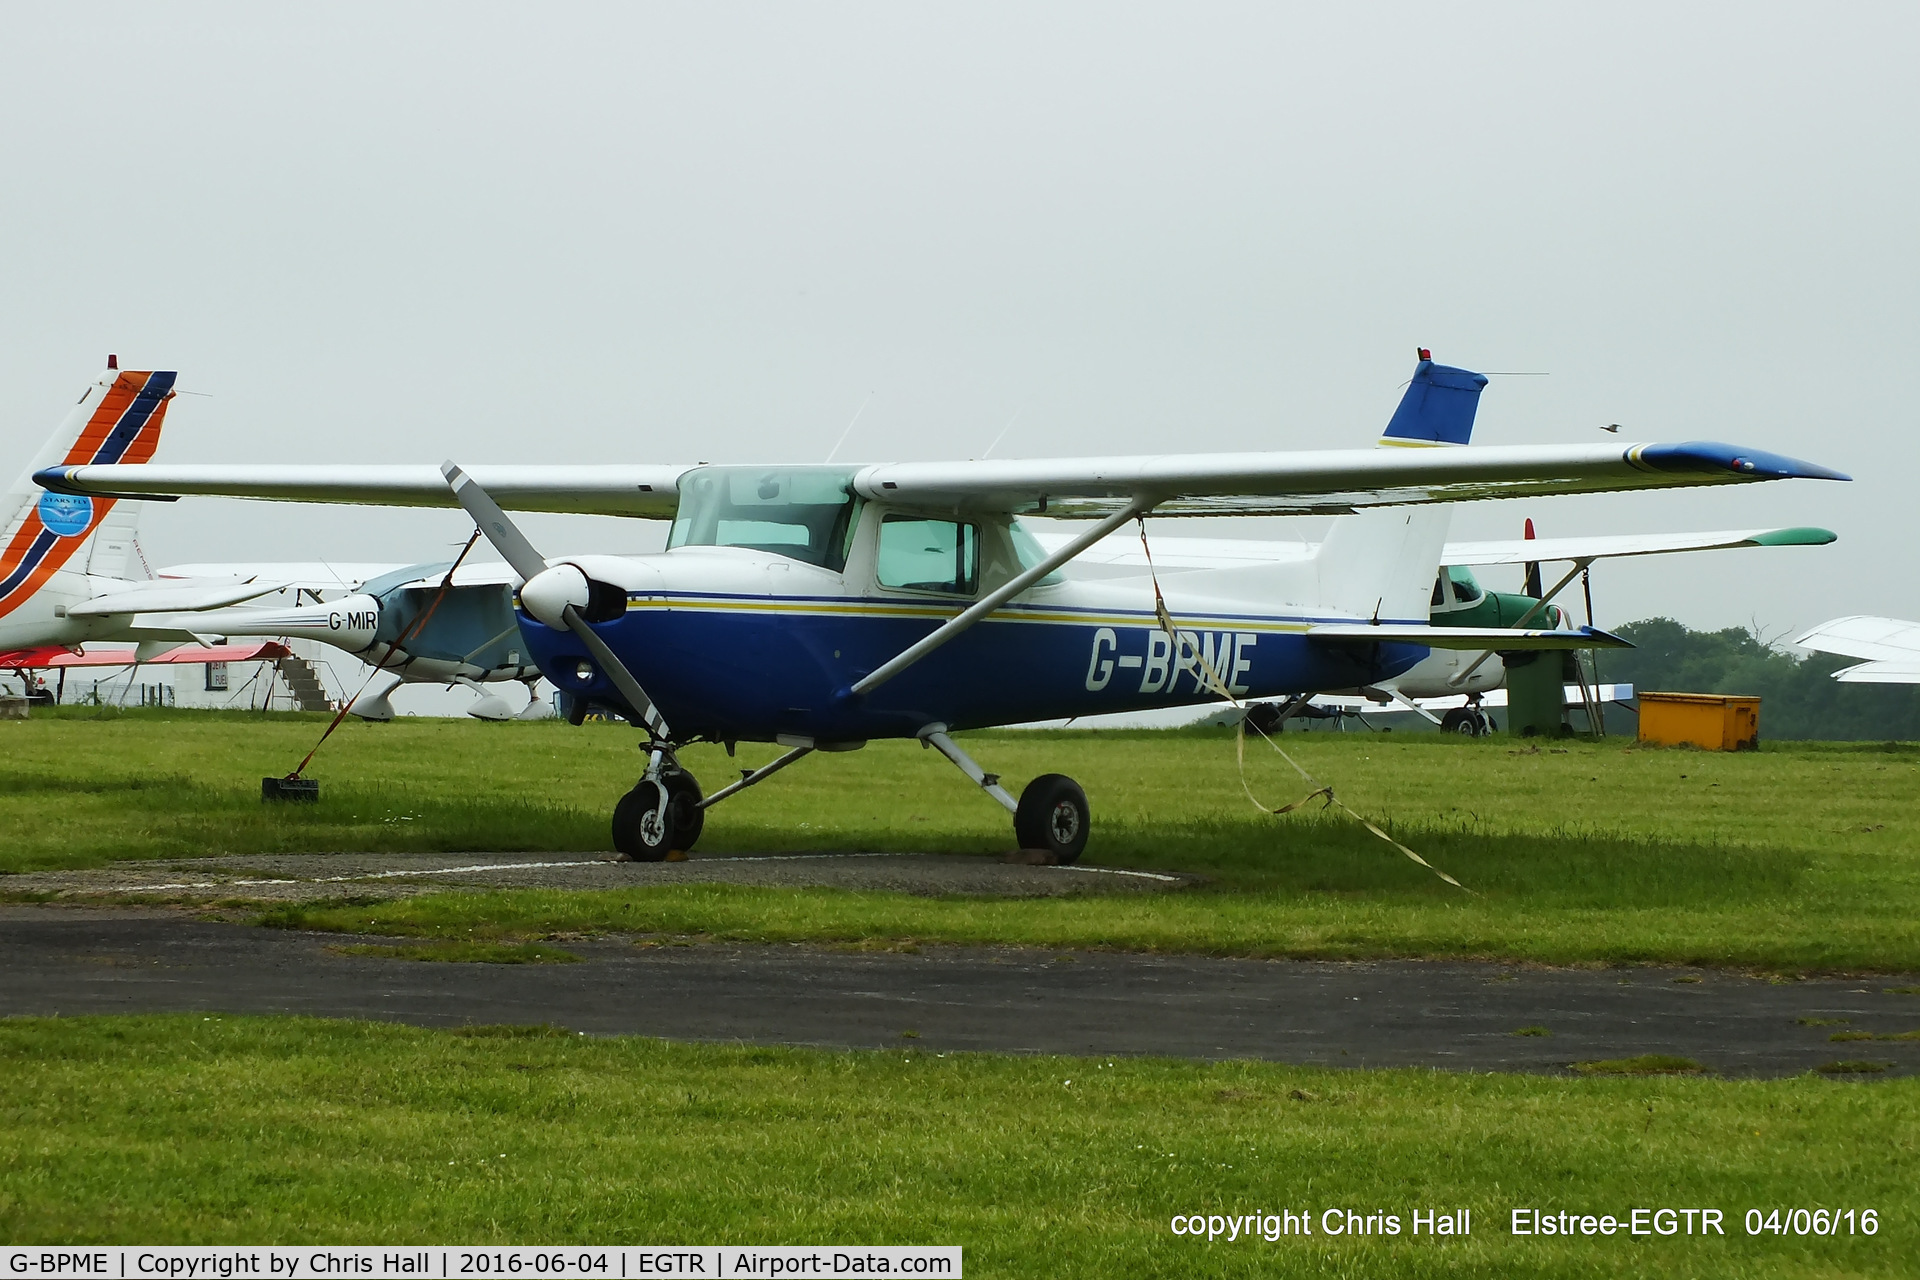 G-BPME, 1982 Cessna 152 C/N 152-85585, at Elstree